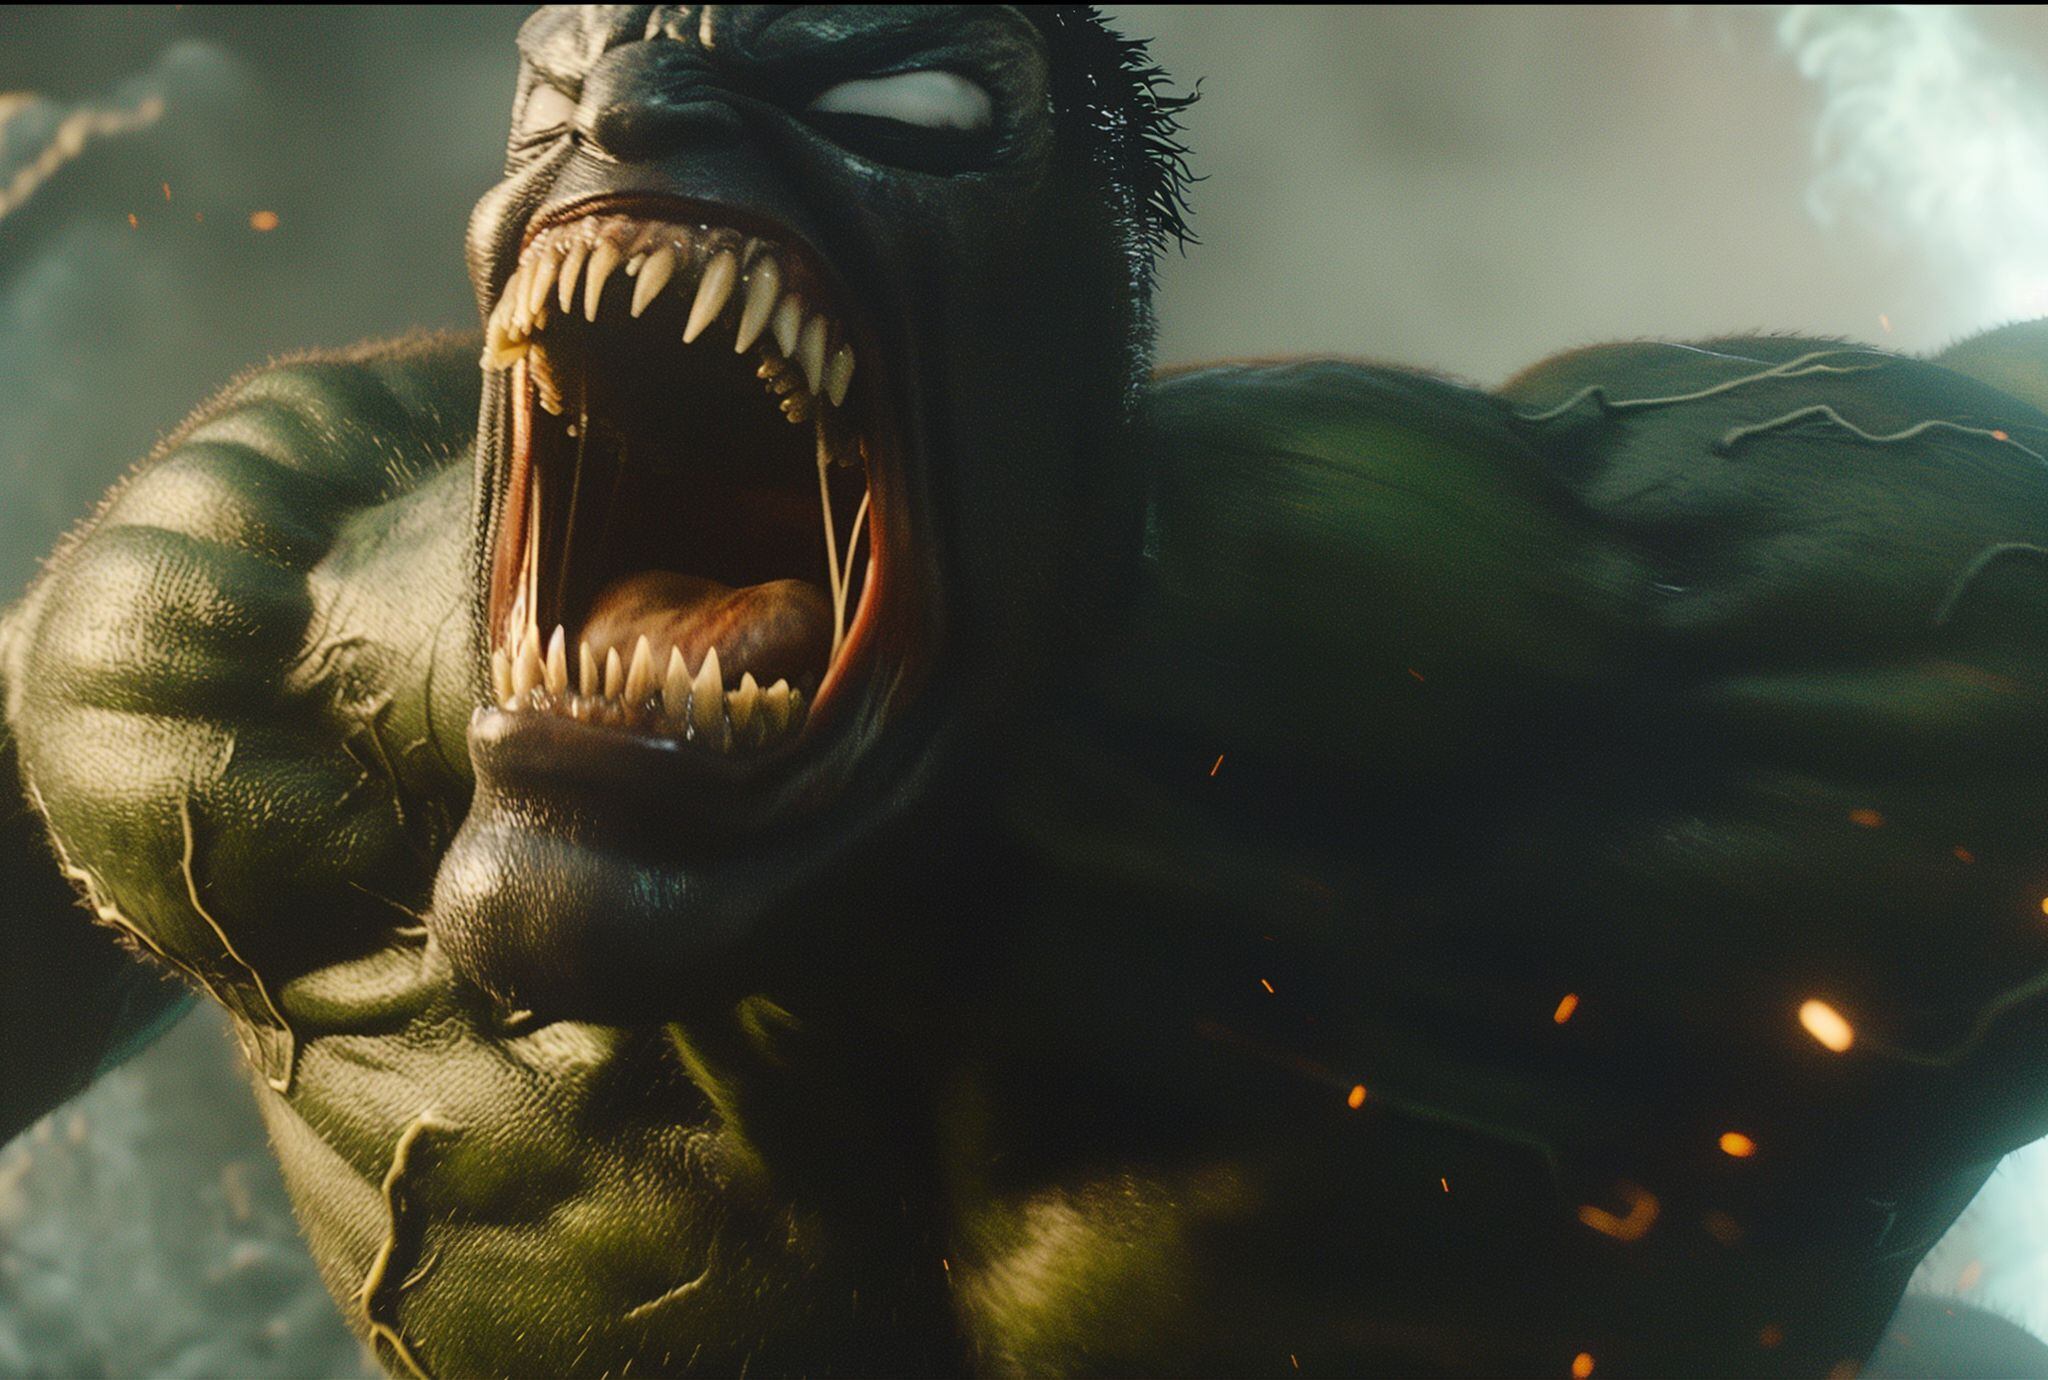 En una serie de cómics llamada "Hulk: The End," se explora un posible futuro donde Bruce Banner (Hulk) es el último ser humano en la Tierra. En este escenario apocalíptico, Hulk y Banner coexisten en la mente de Bruce, siendo Hulk el único sobreviviente en un mundo desolado.